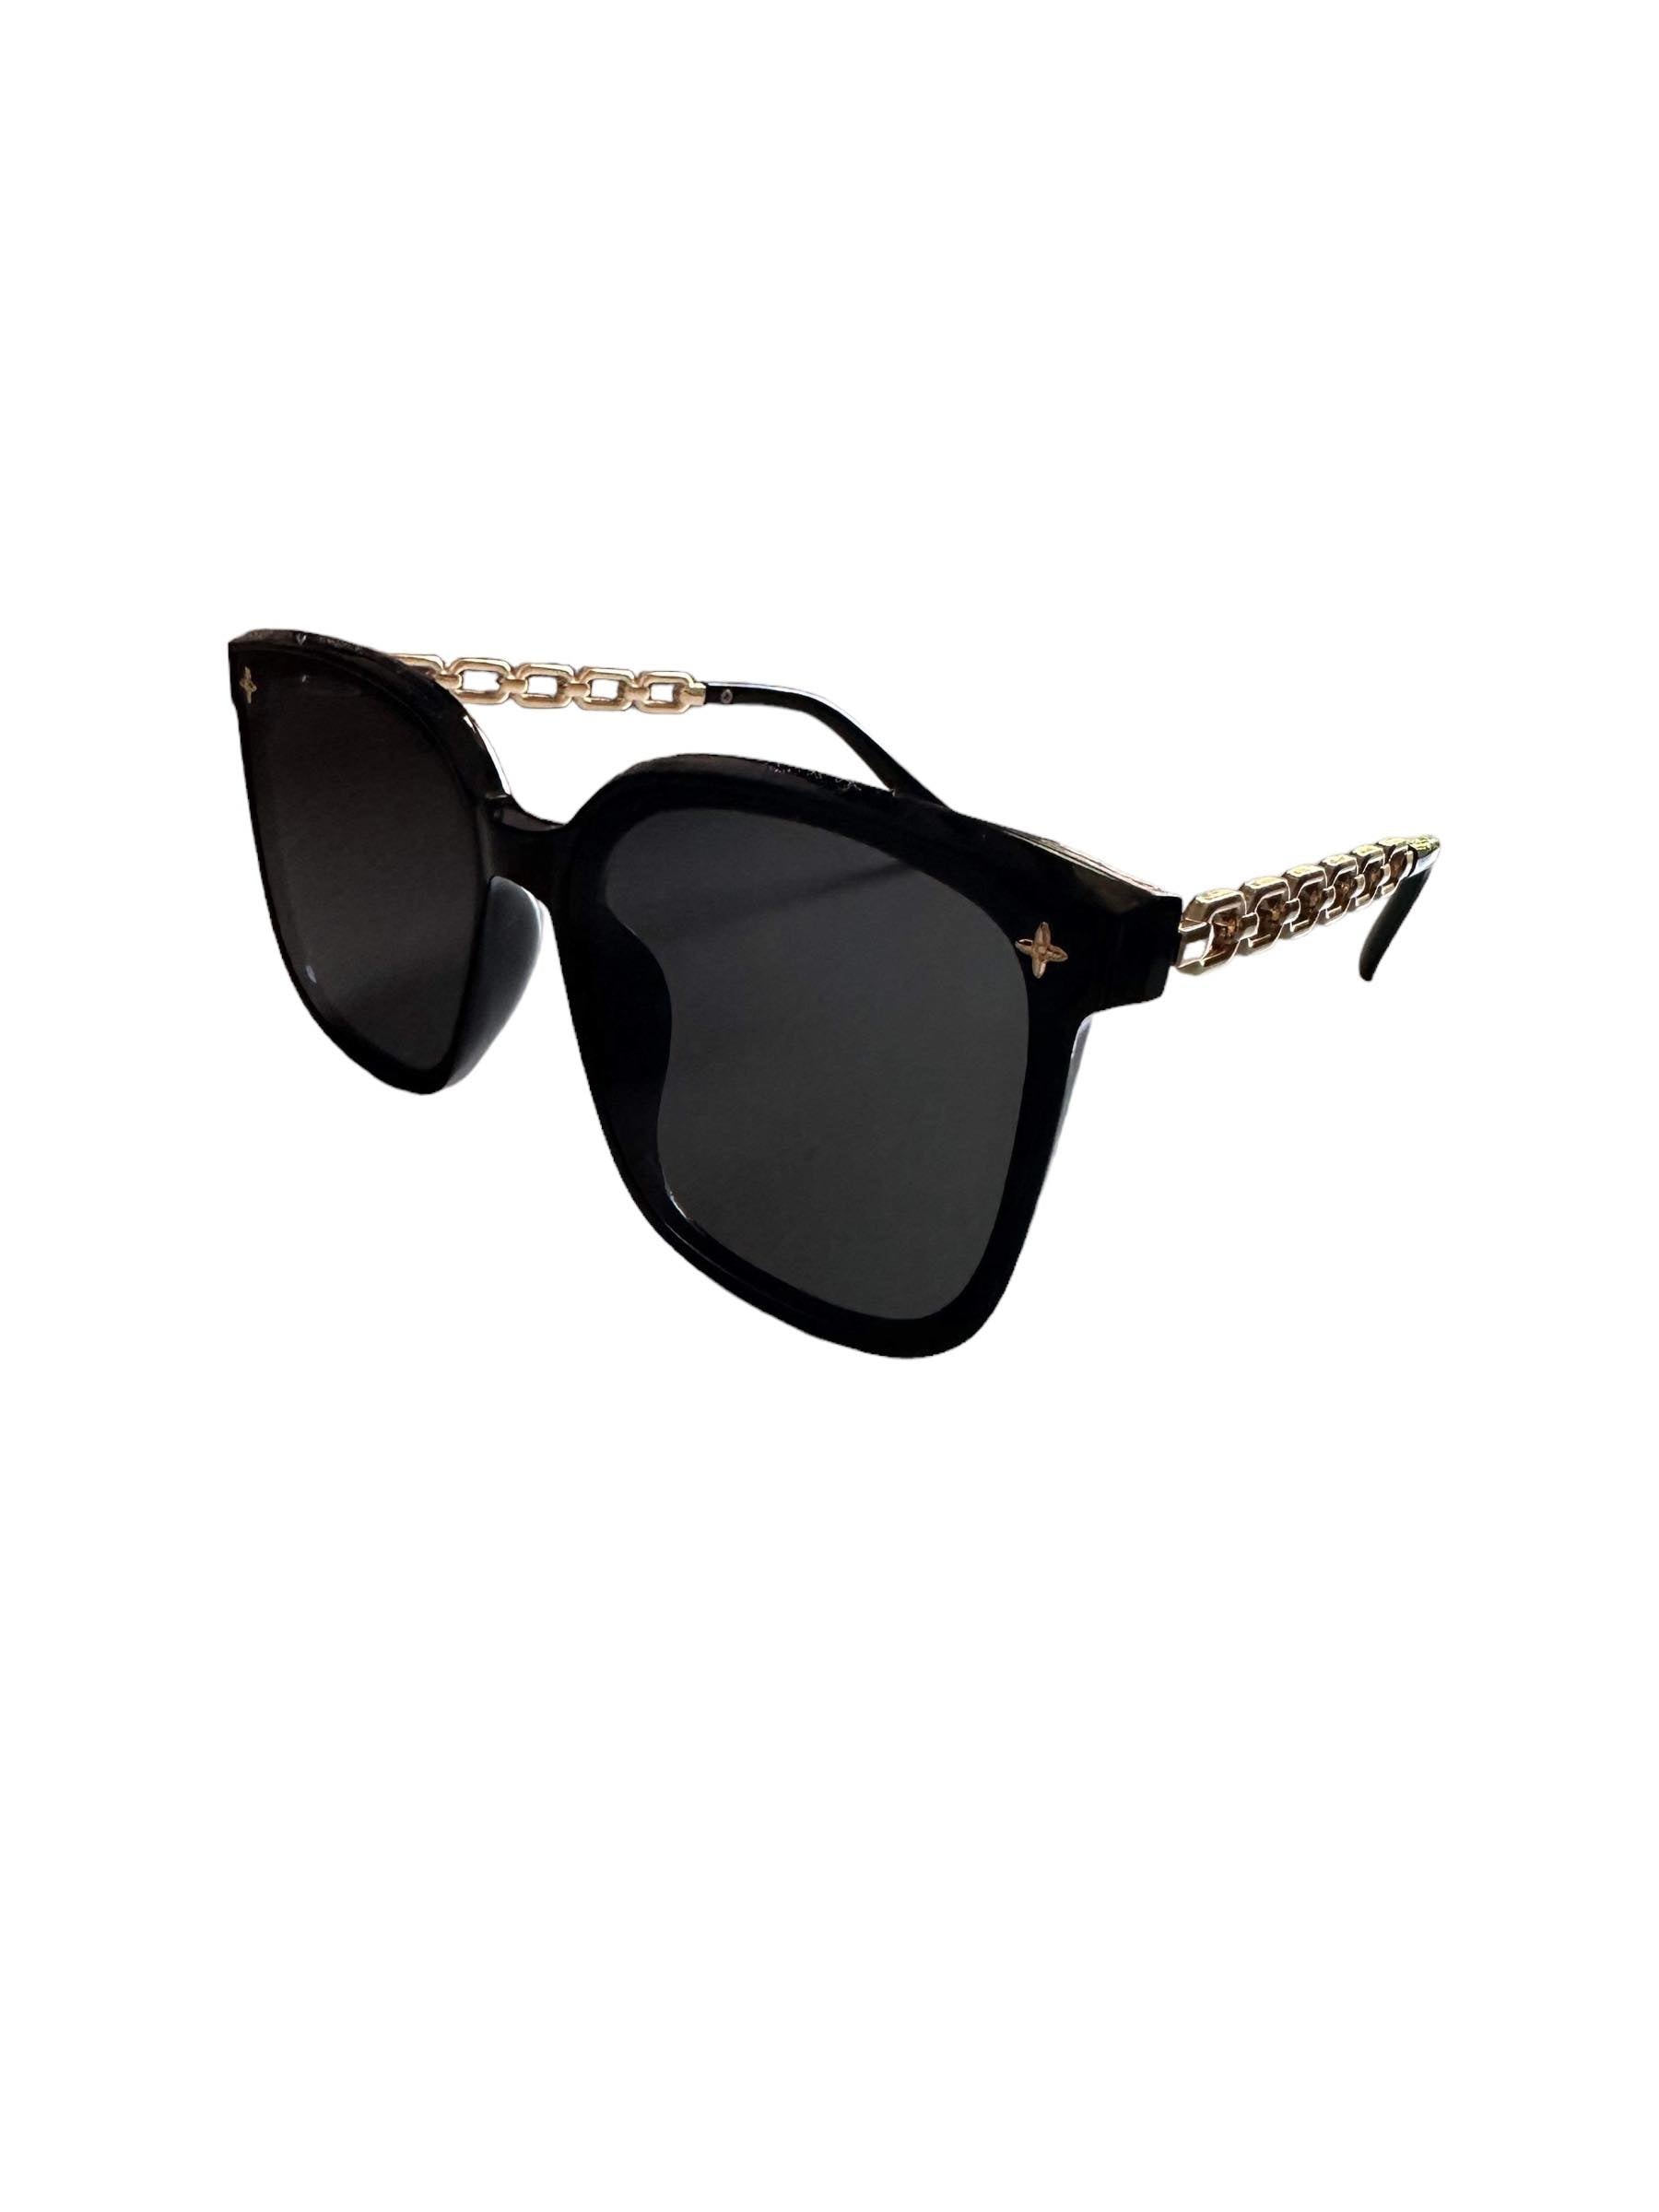 'NEW' Linked framed Sunglasses